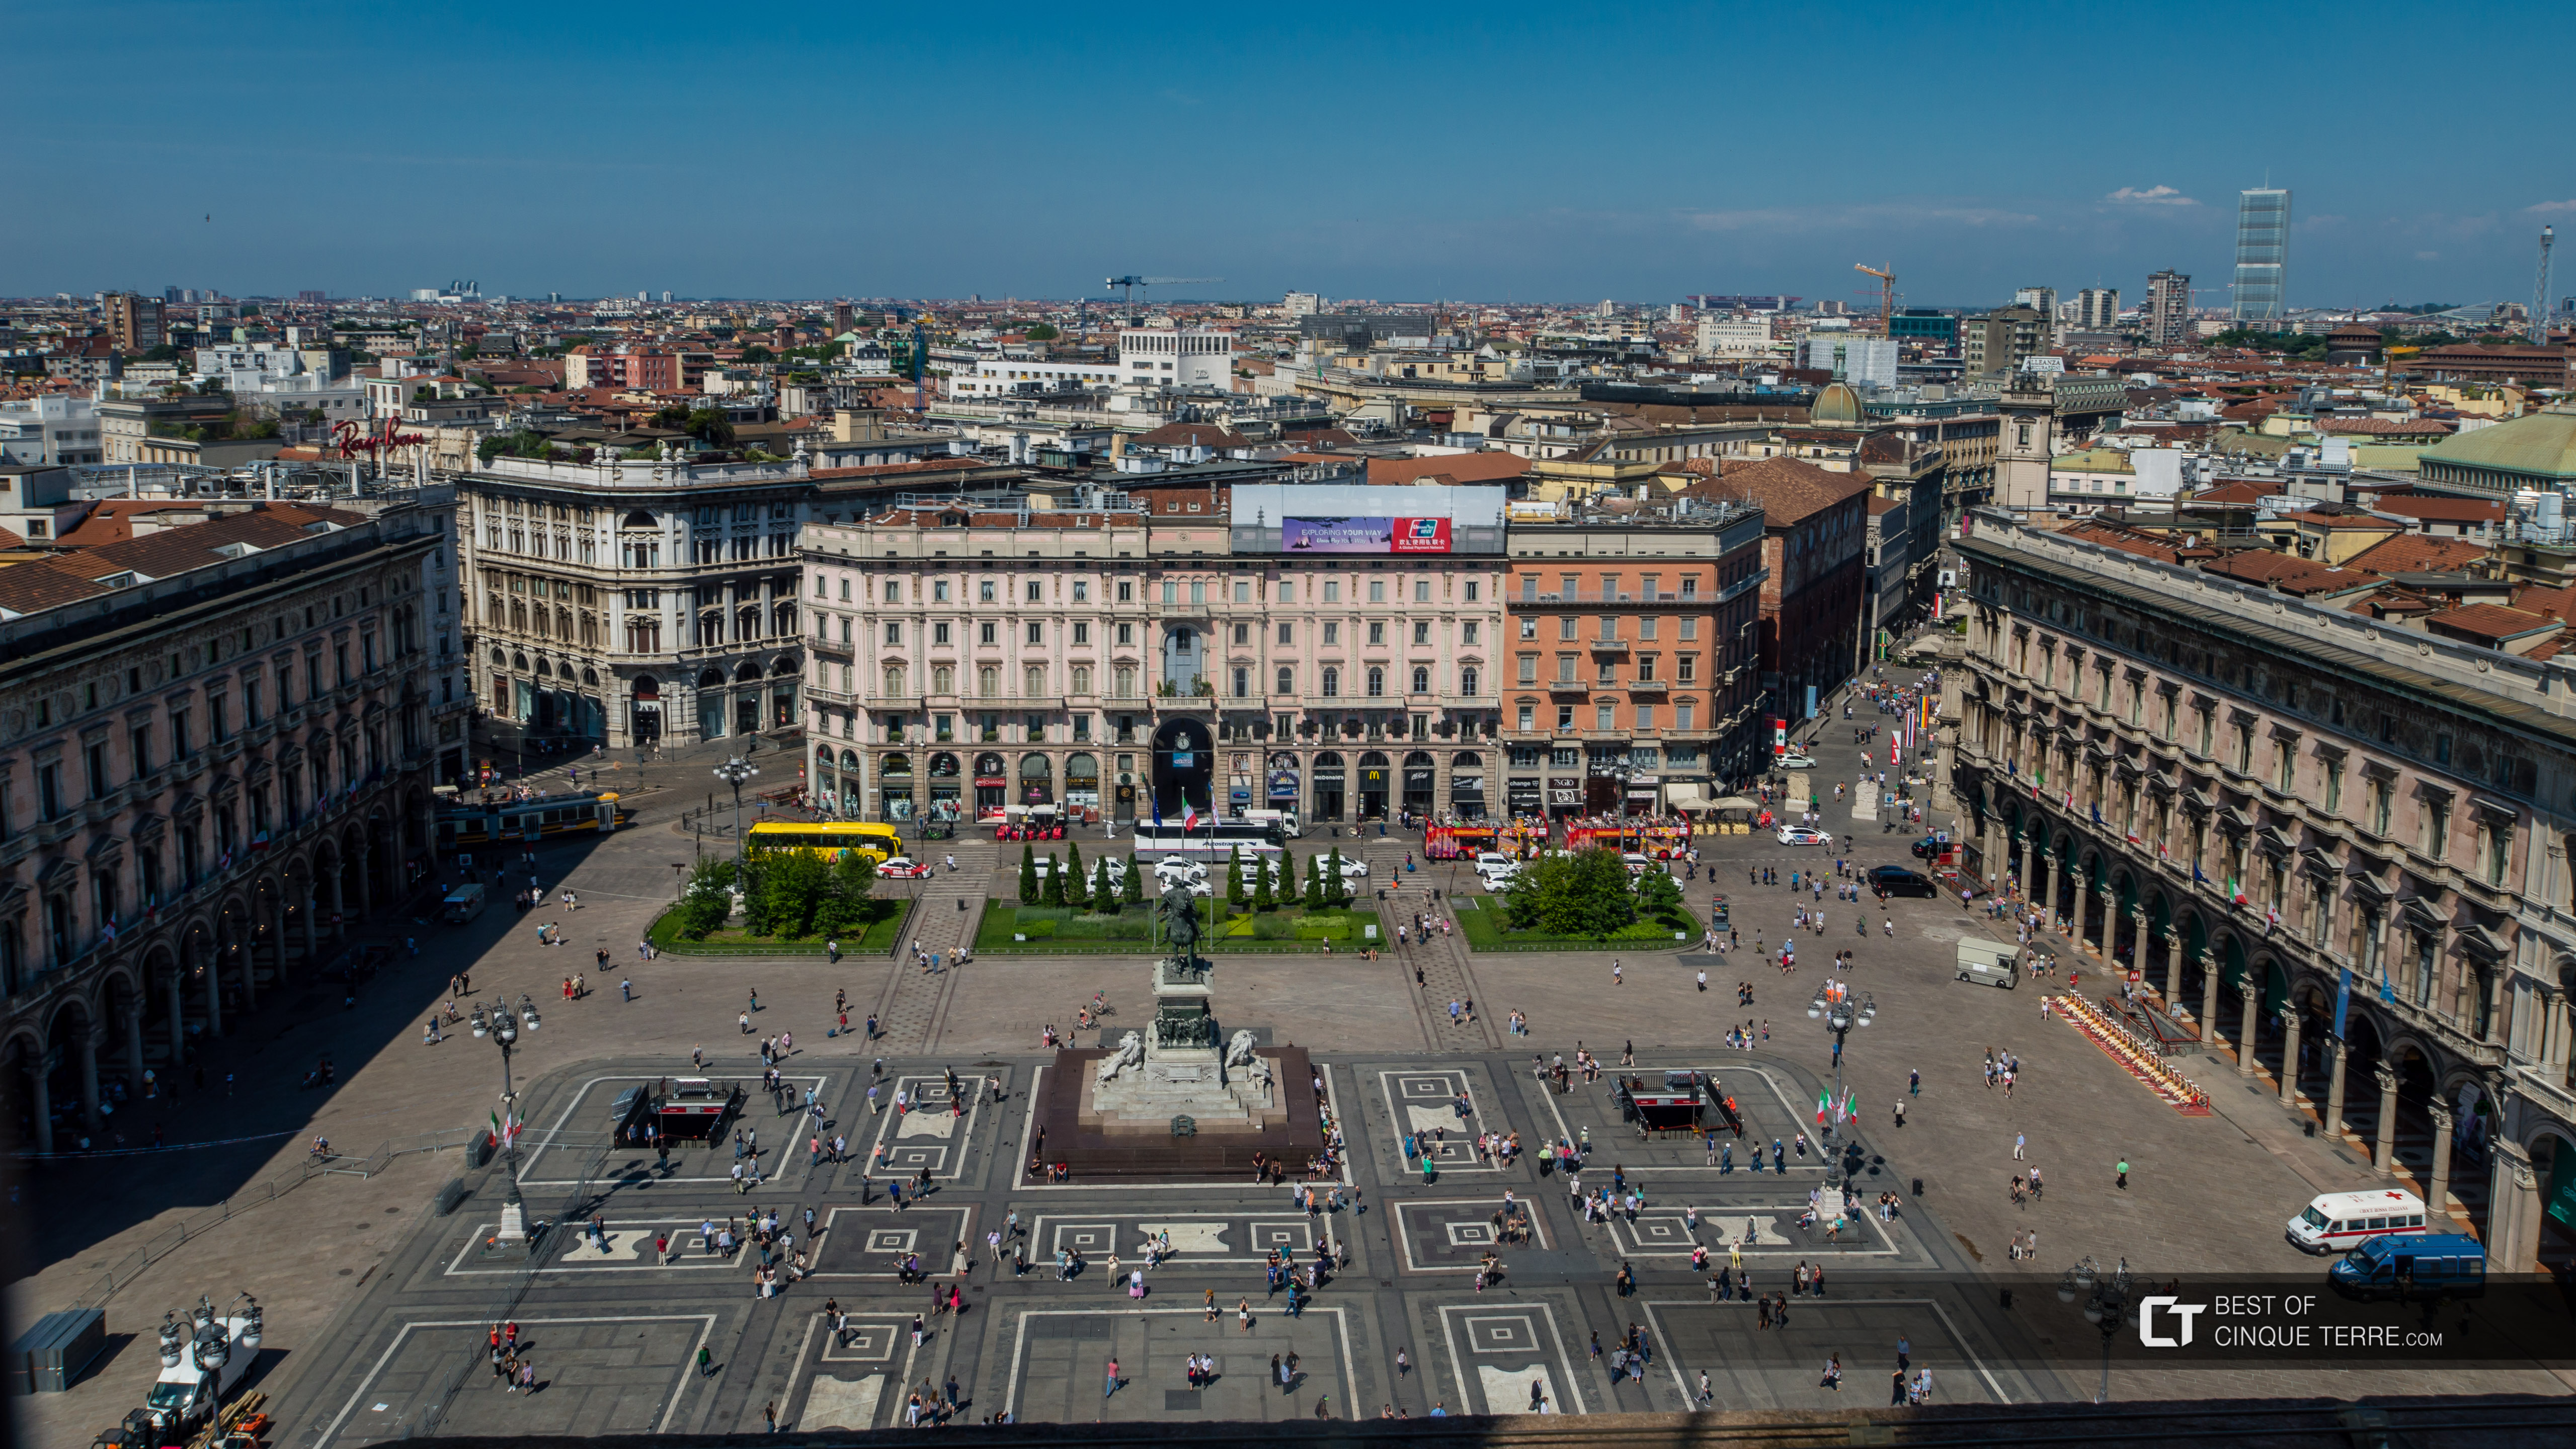 Piazza Duomo vista do teto da catedral, Milão, Itália